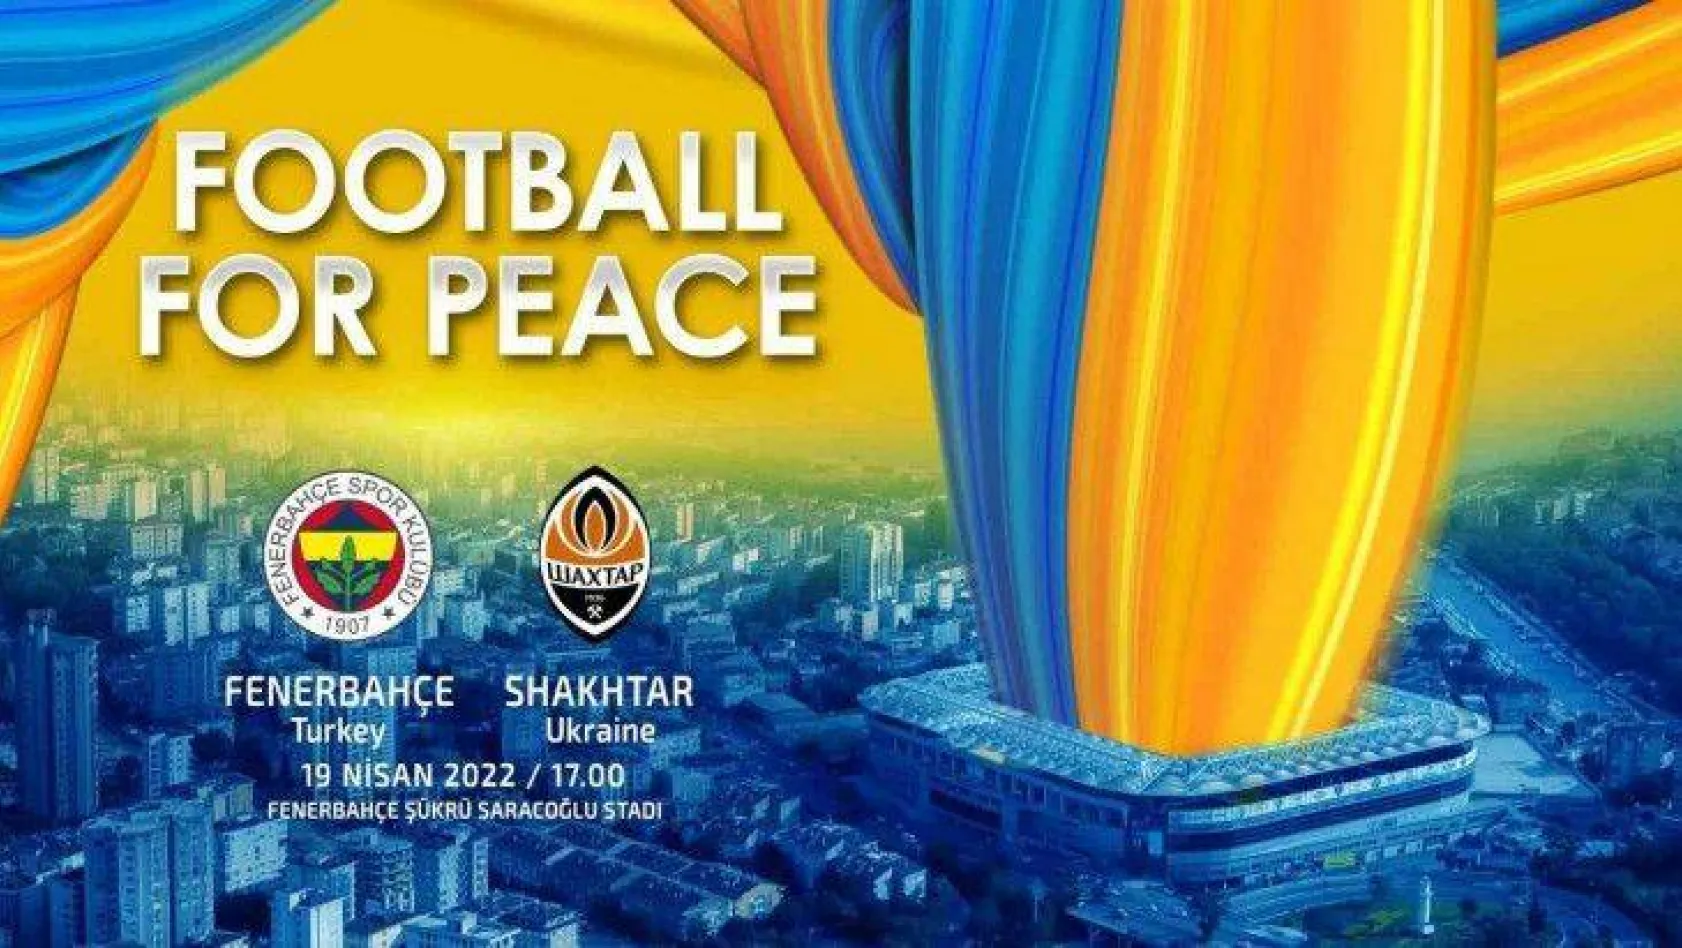 Fenerbahçe, Shaktar Donetsk ile 'Barış için futbol' maçına çıkacak